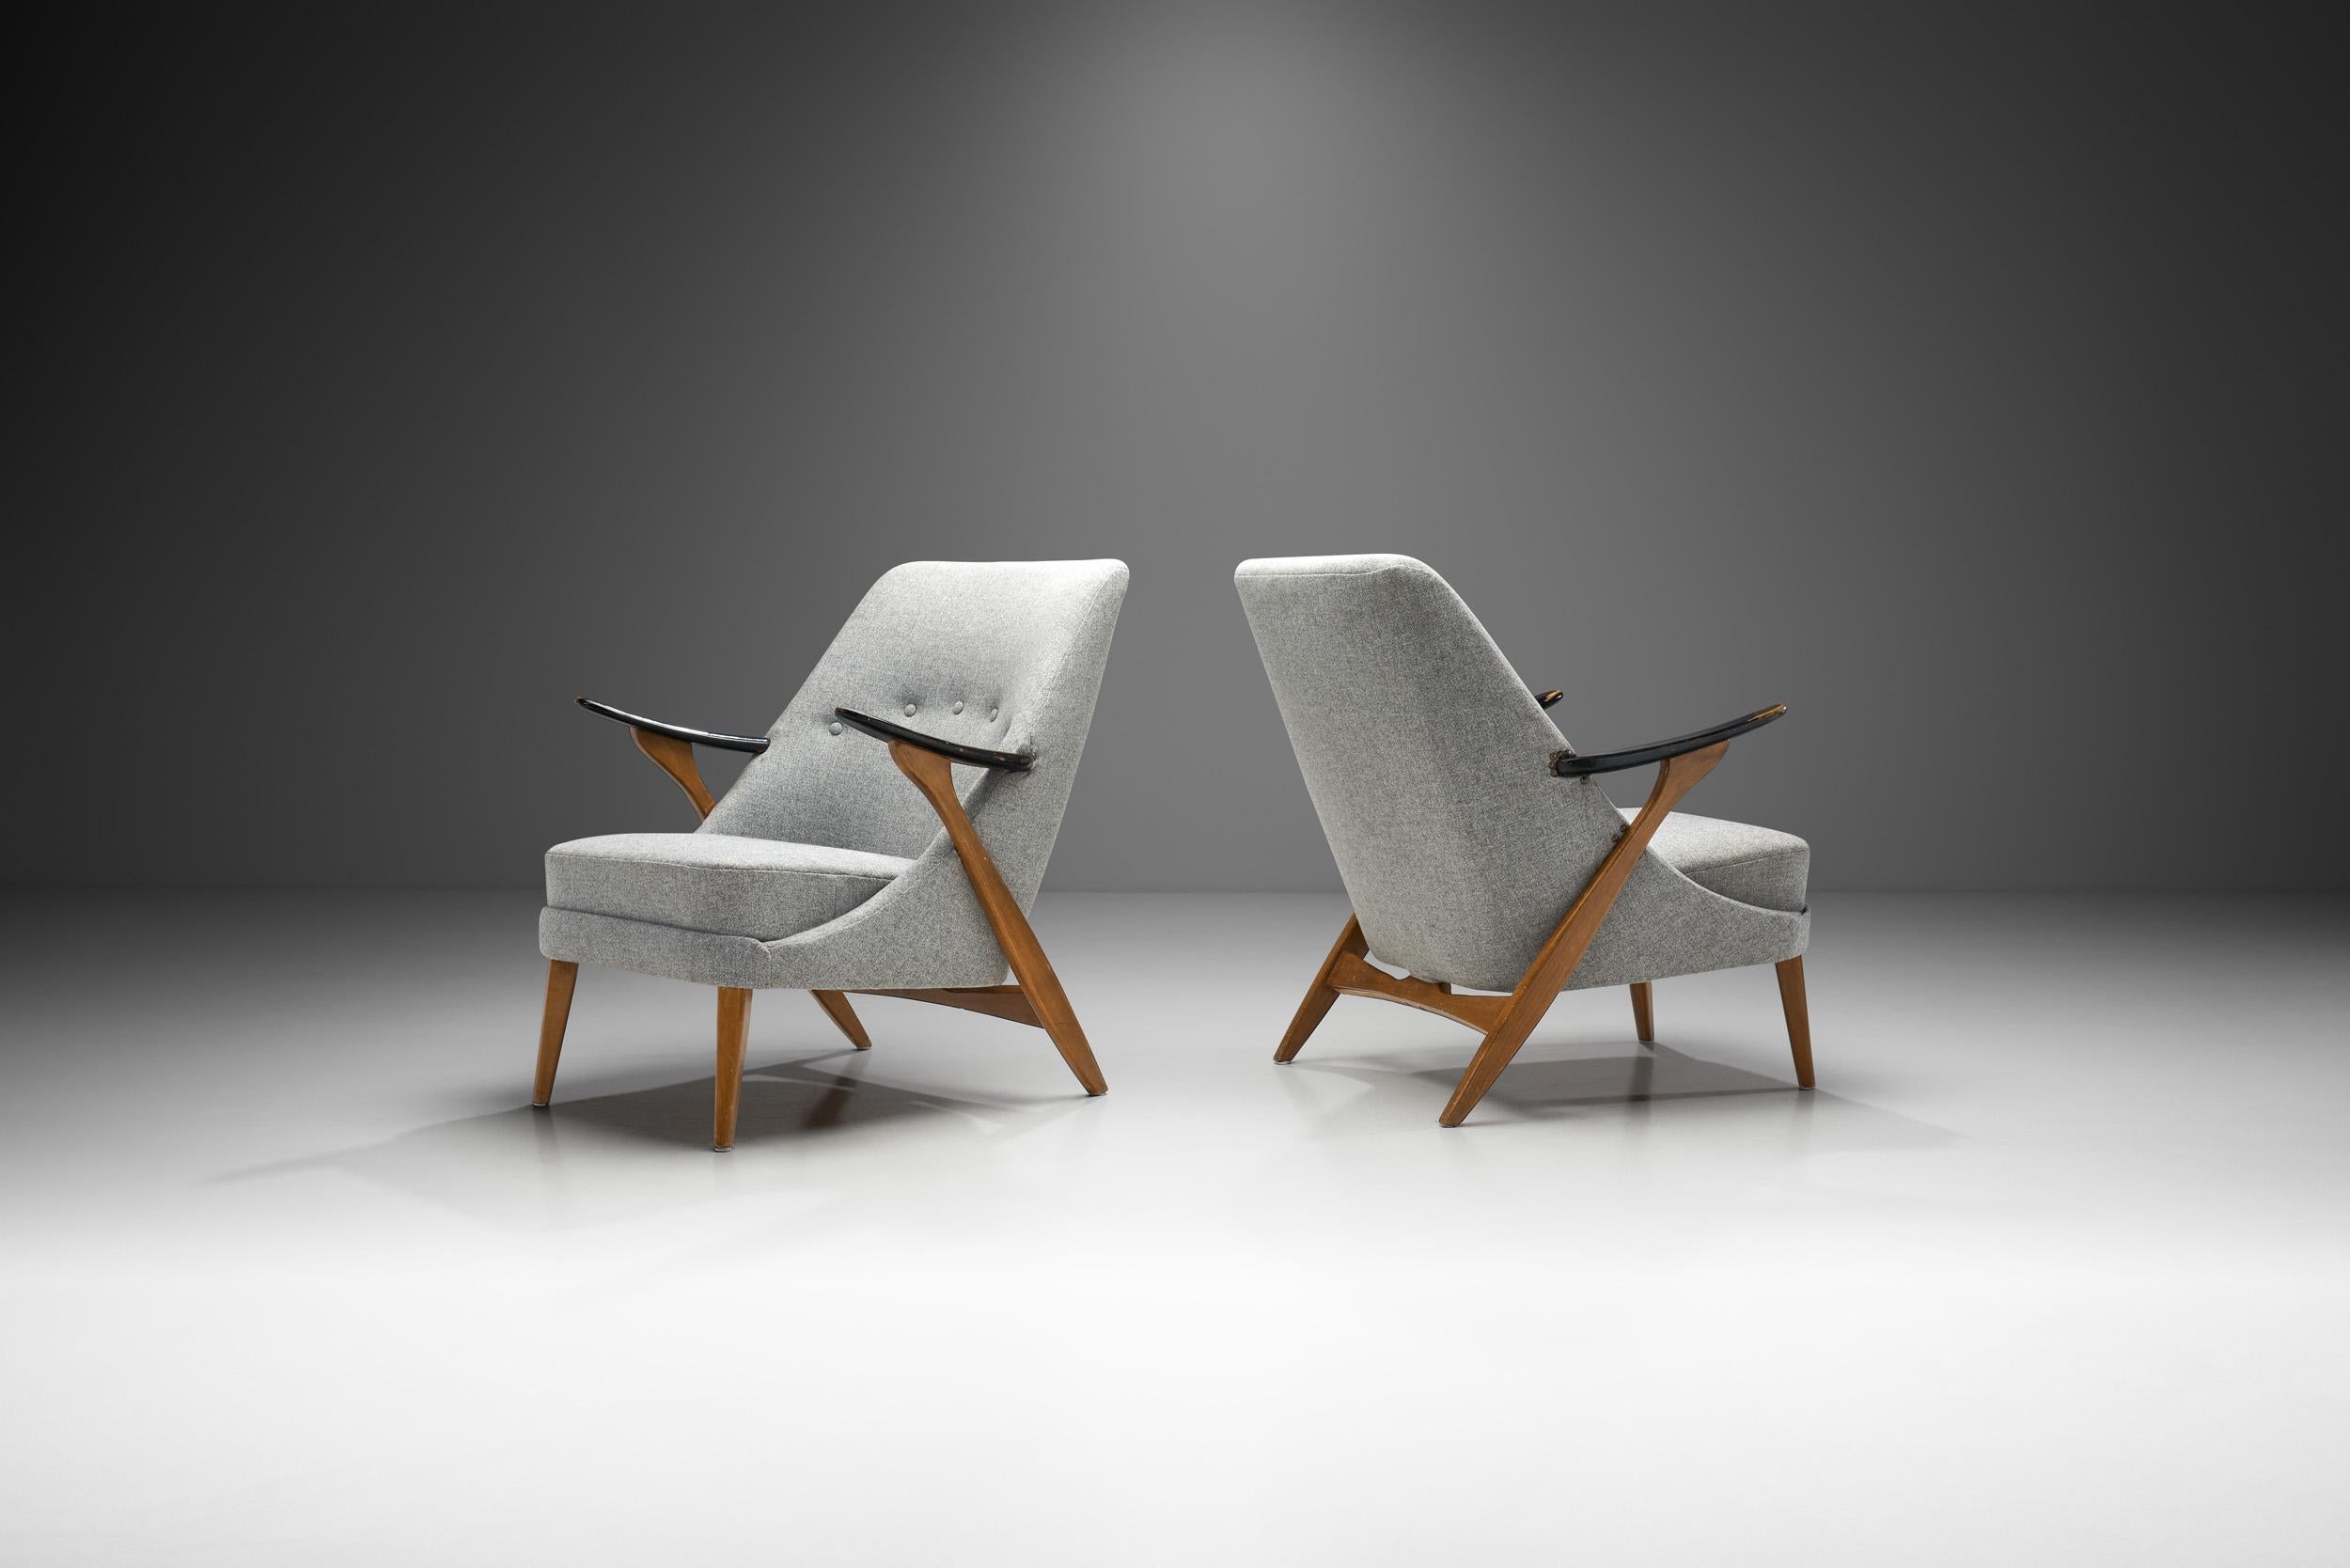 Dieses Paar spektakulärer Sessel des schwedischen Designers Svante Skogh ist ein eher seltenes Beispiel für das Repertoire des Innenarchitekten und Möbeldesigners. Mit ihrer kreativen und meisterhaft gefertigten Holzstruktur verdienen diese Stühle